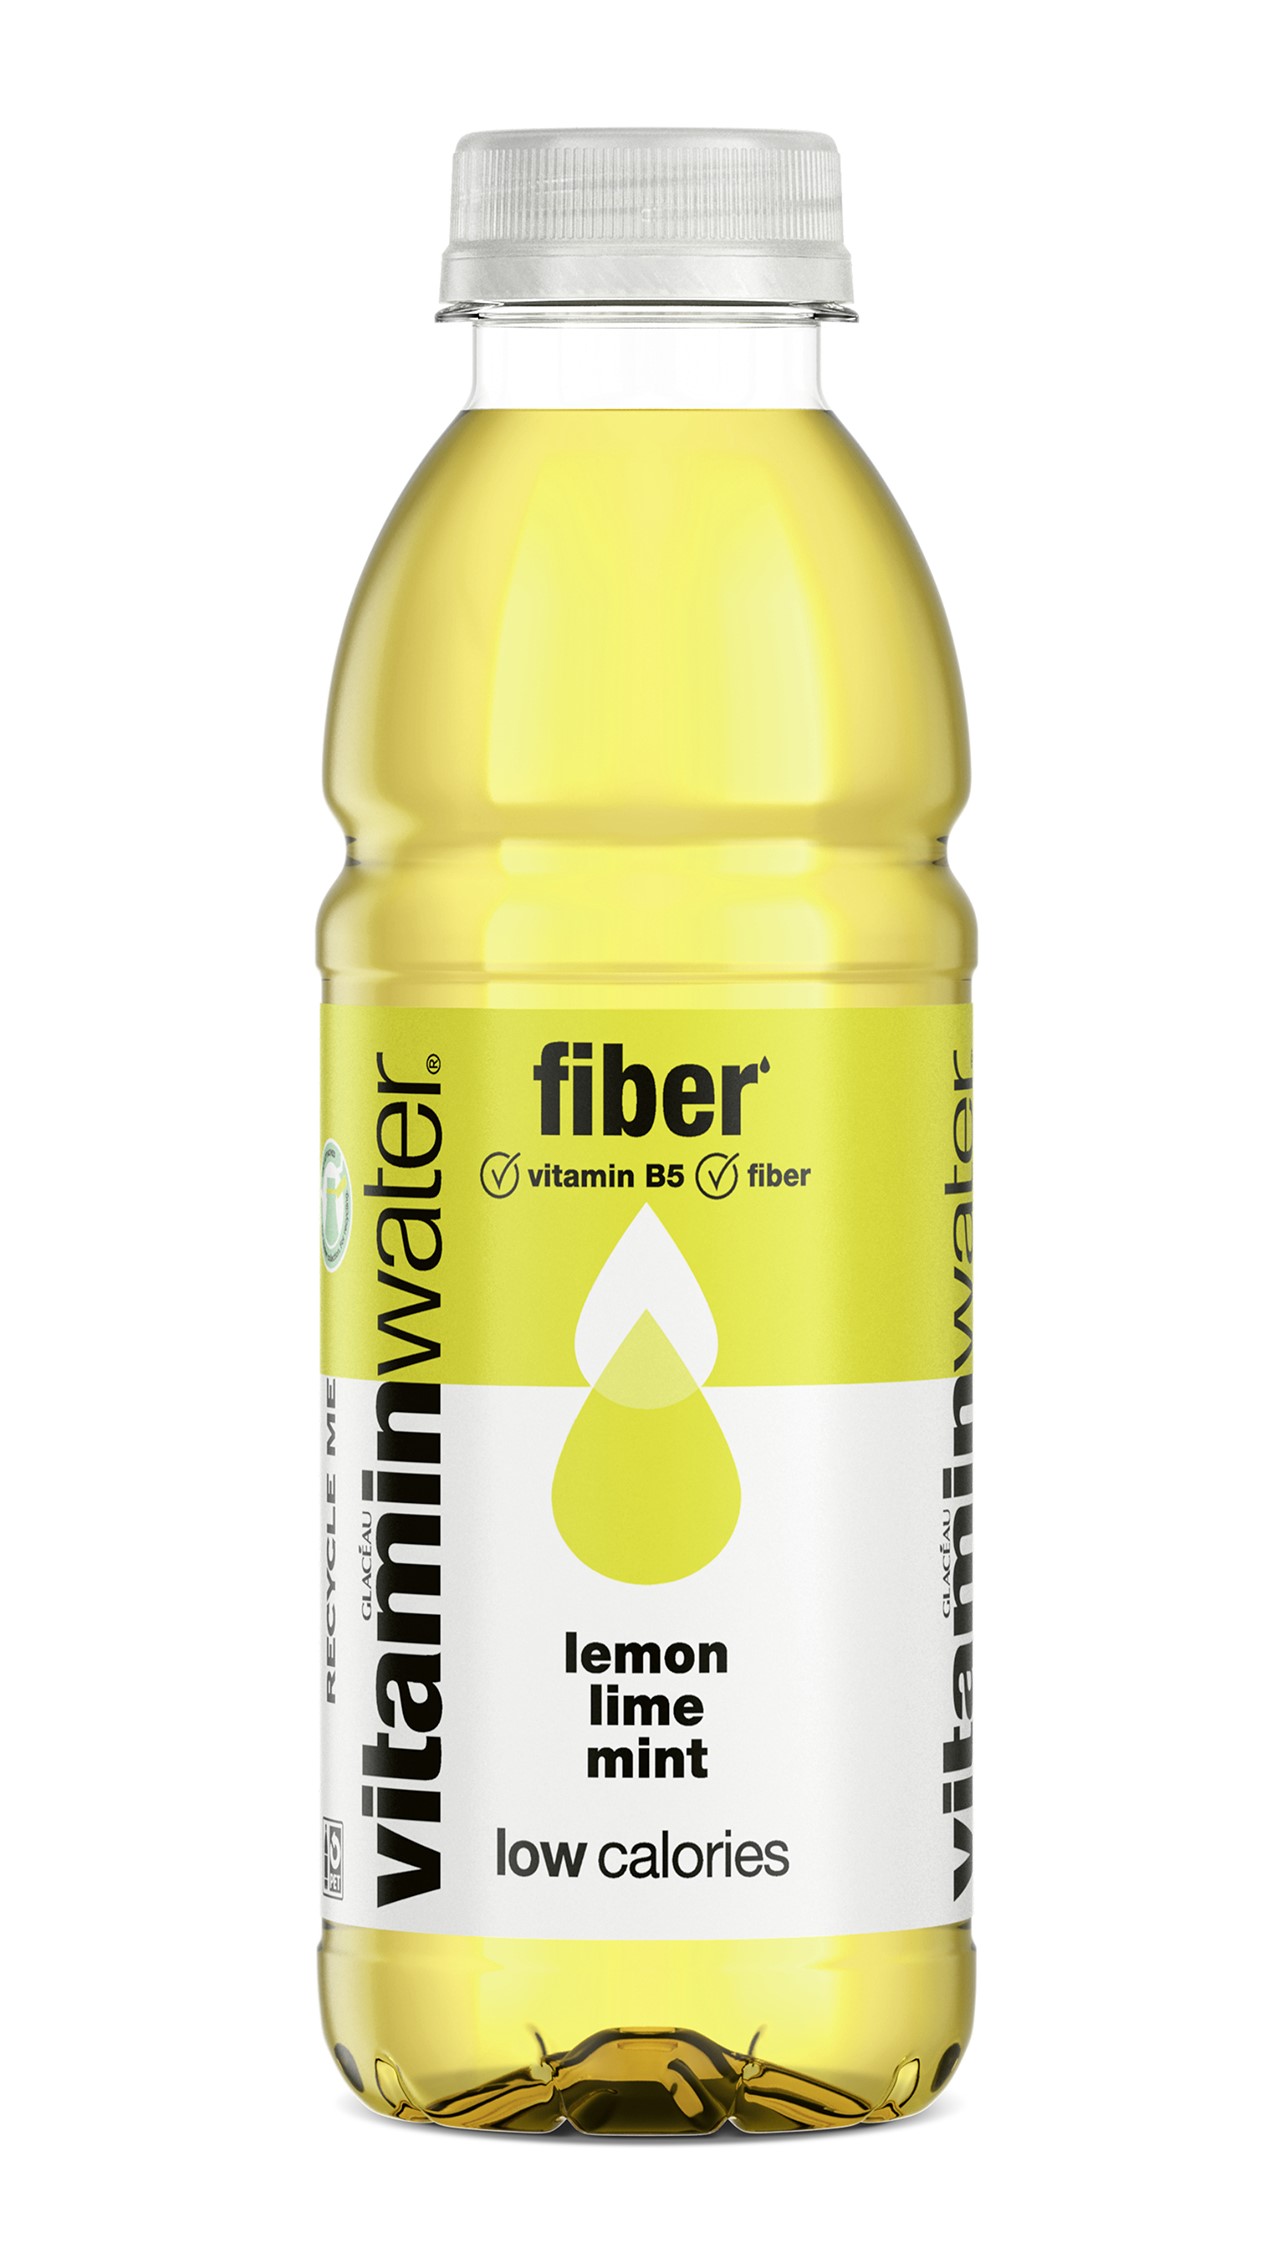 Eine Flasche Glacéau Vitaminwater  in der Variante fiber